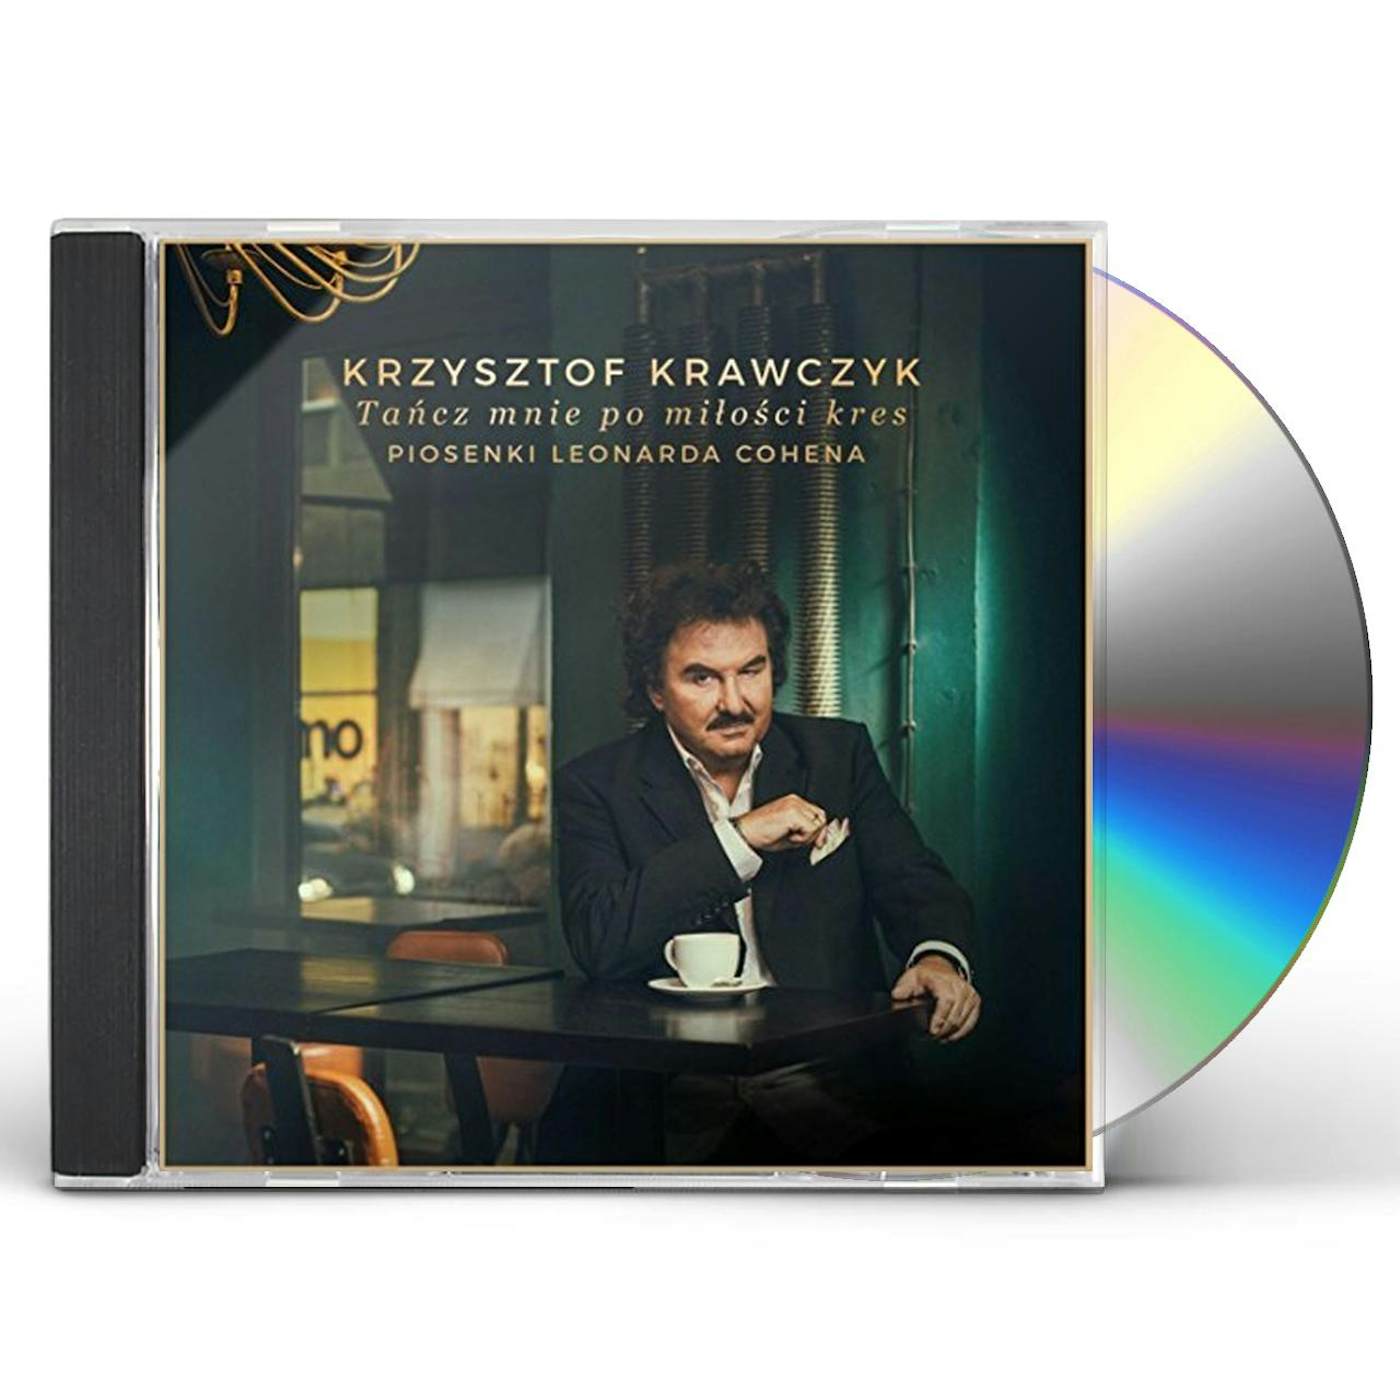 Krzysztof Krawczyk TANCZ MNIE PO MILOSCI KRES. PIOSENKI LEO CD